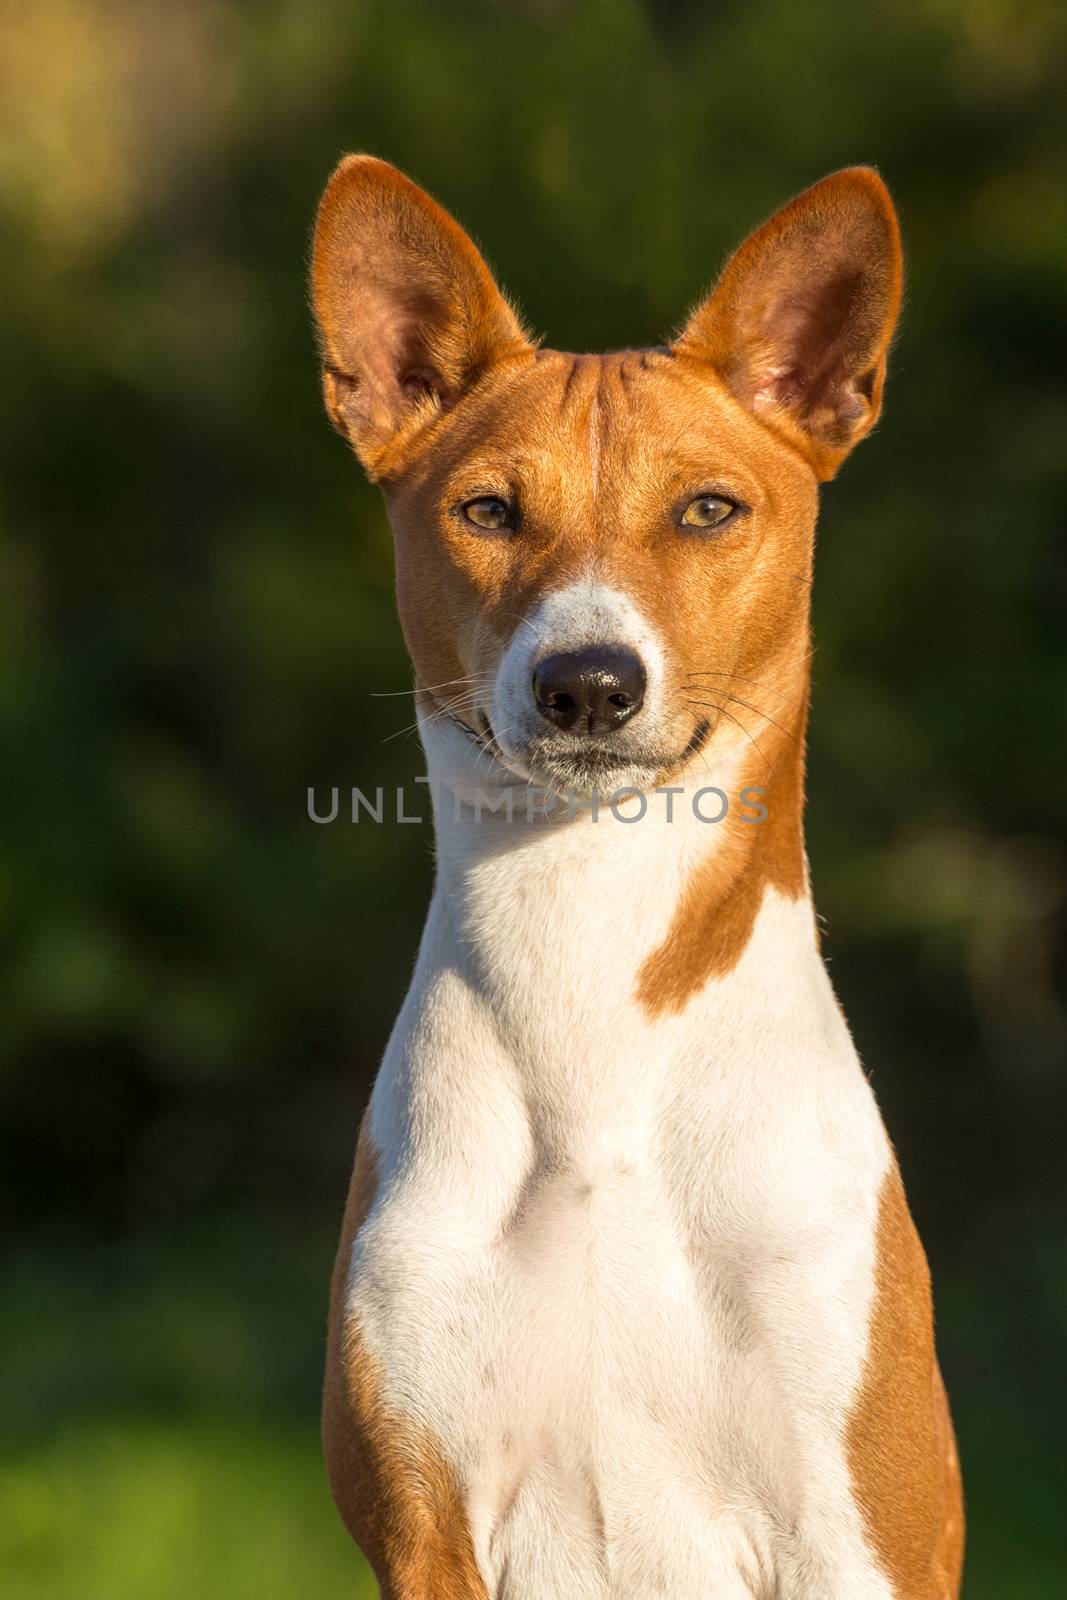 Small hunting dog breed Basenji looking forward